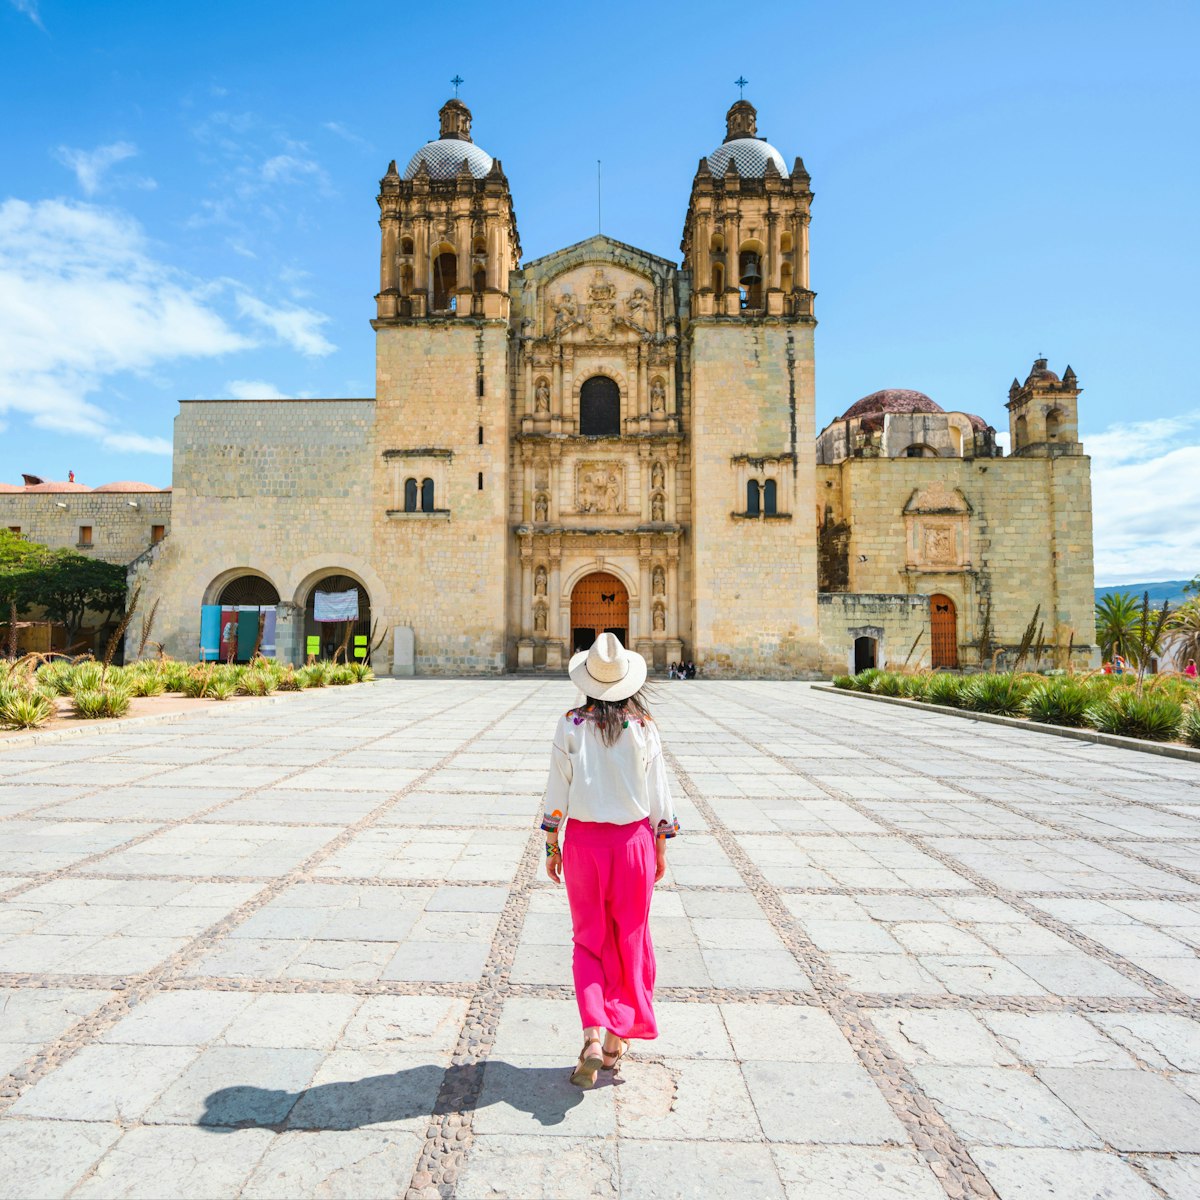 A woman walking toward the Church of Santo Domingo de Guzman, Oaxaca, Mexico.